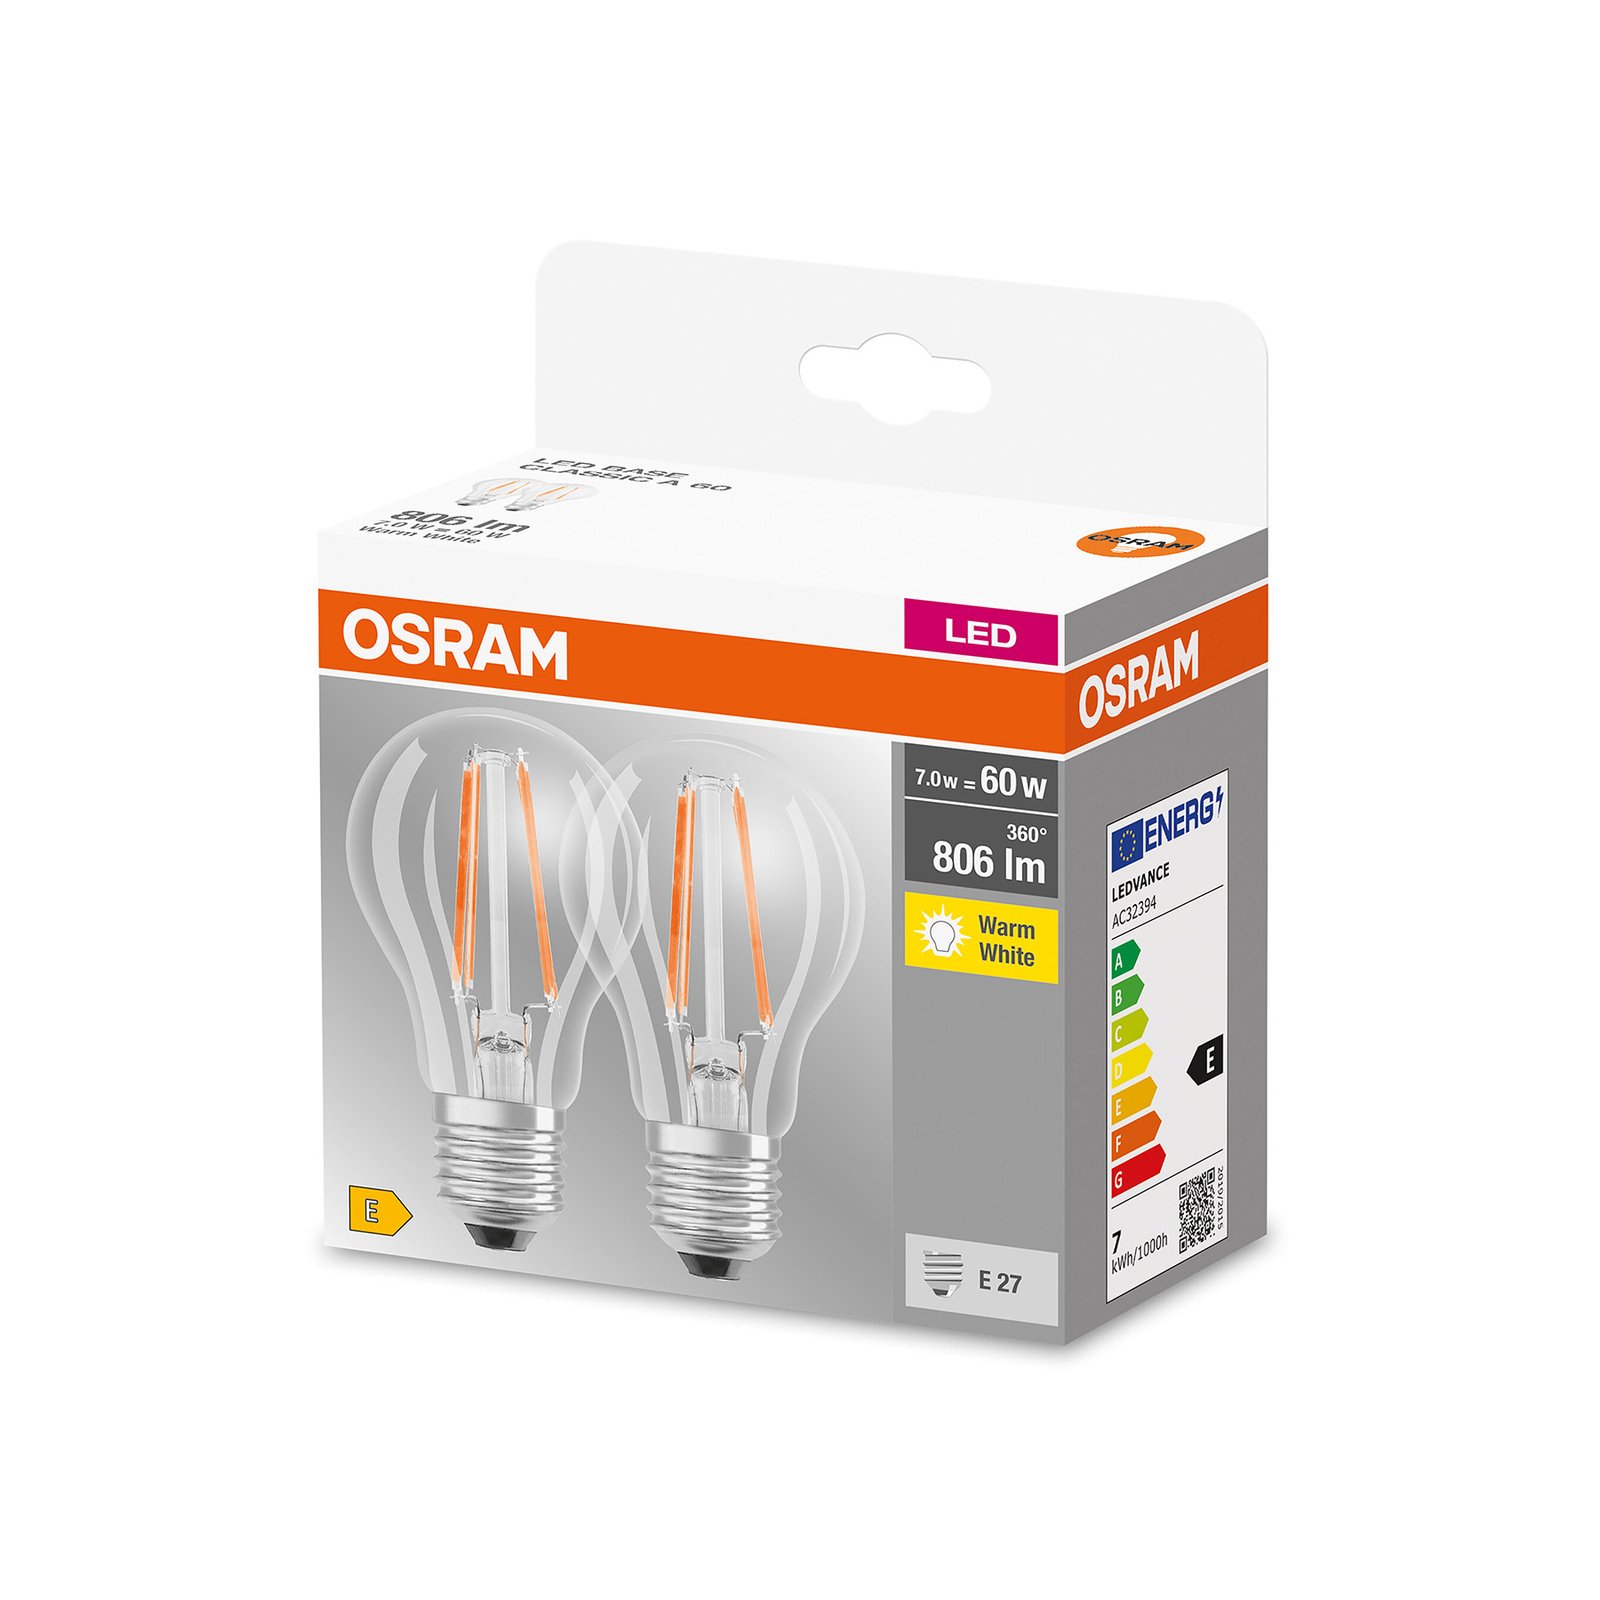 Λαμπτήρας πυράκτωσης LED OSRAM E27 6.5W 827 διαφανές σετ 2 τεμαχίων